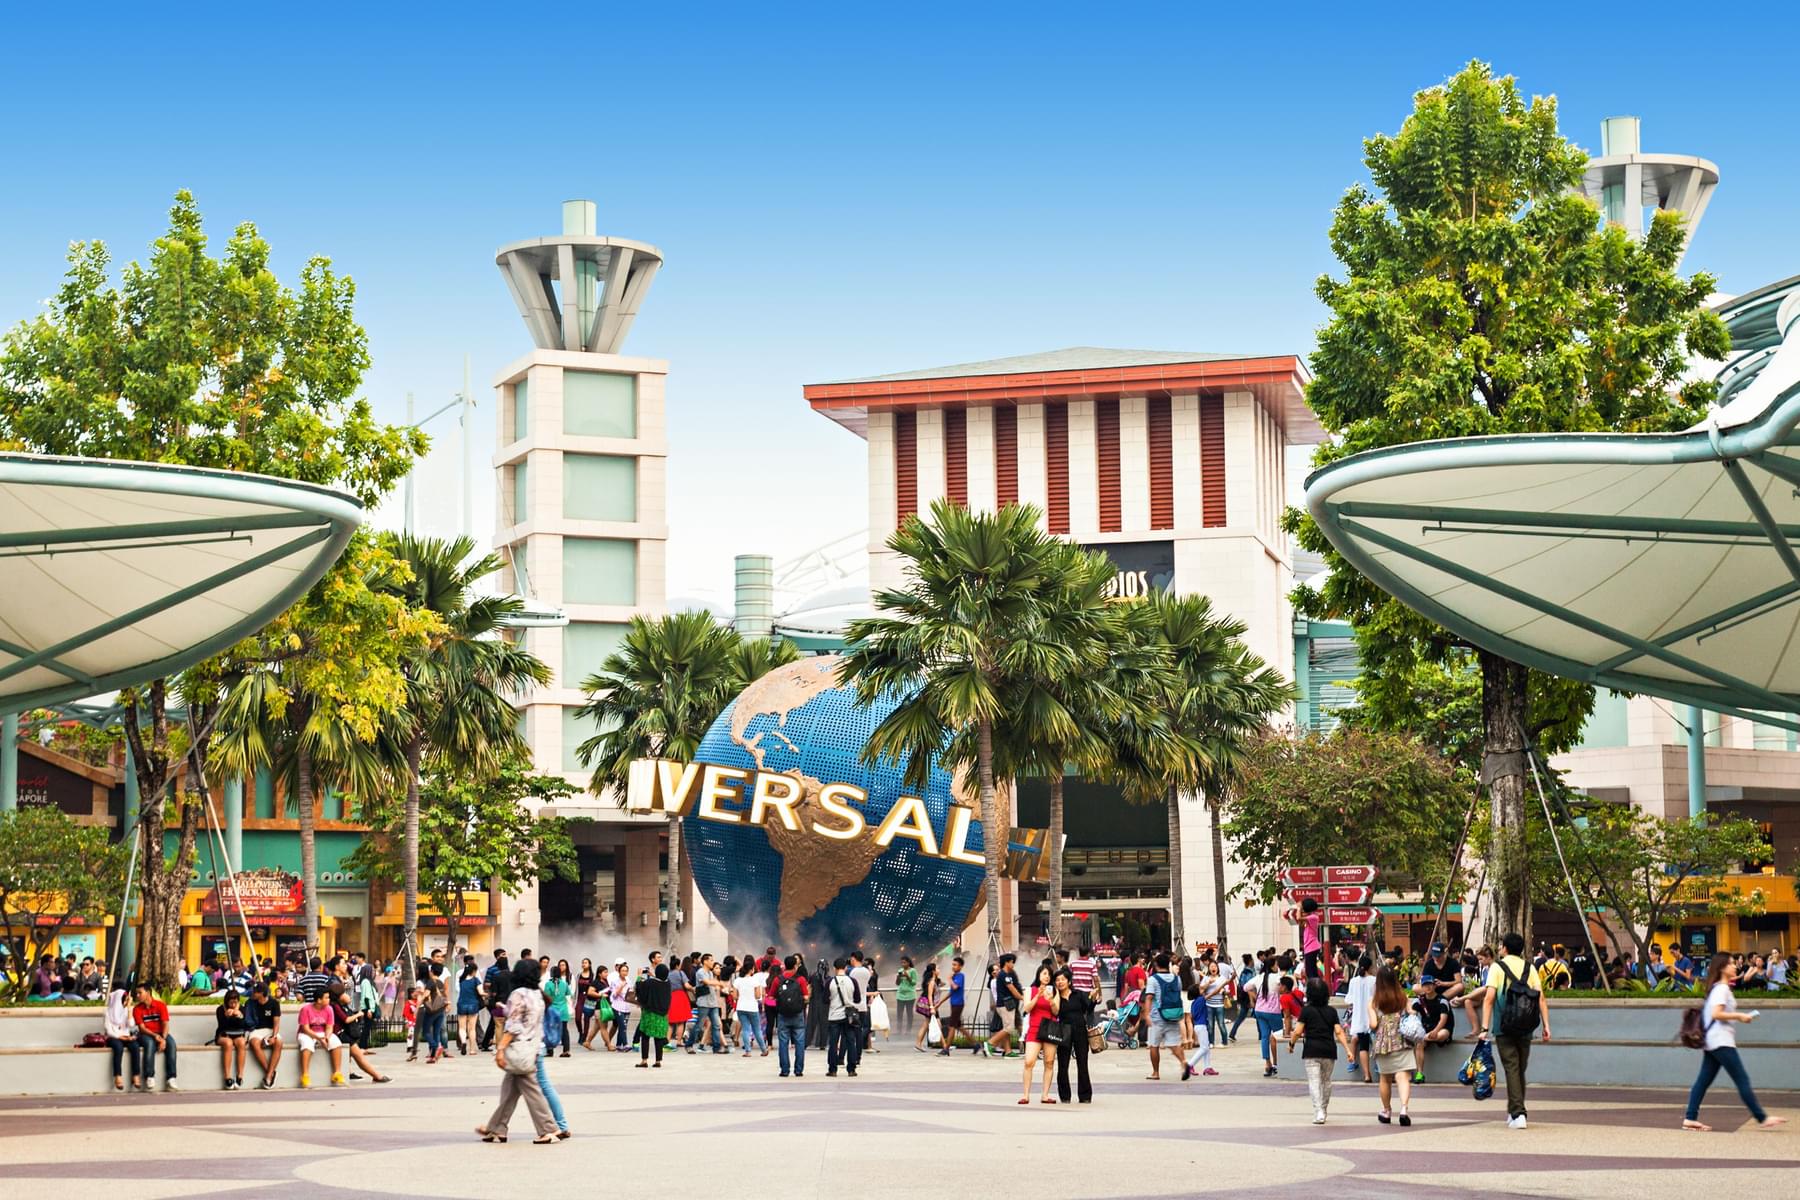 Universal Studio Singapore with S.E.A. Aquarium Singapore Tickets